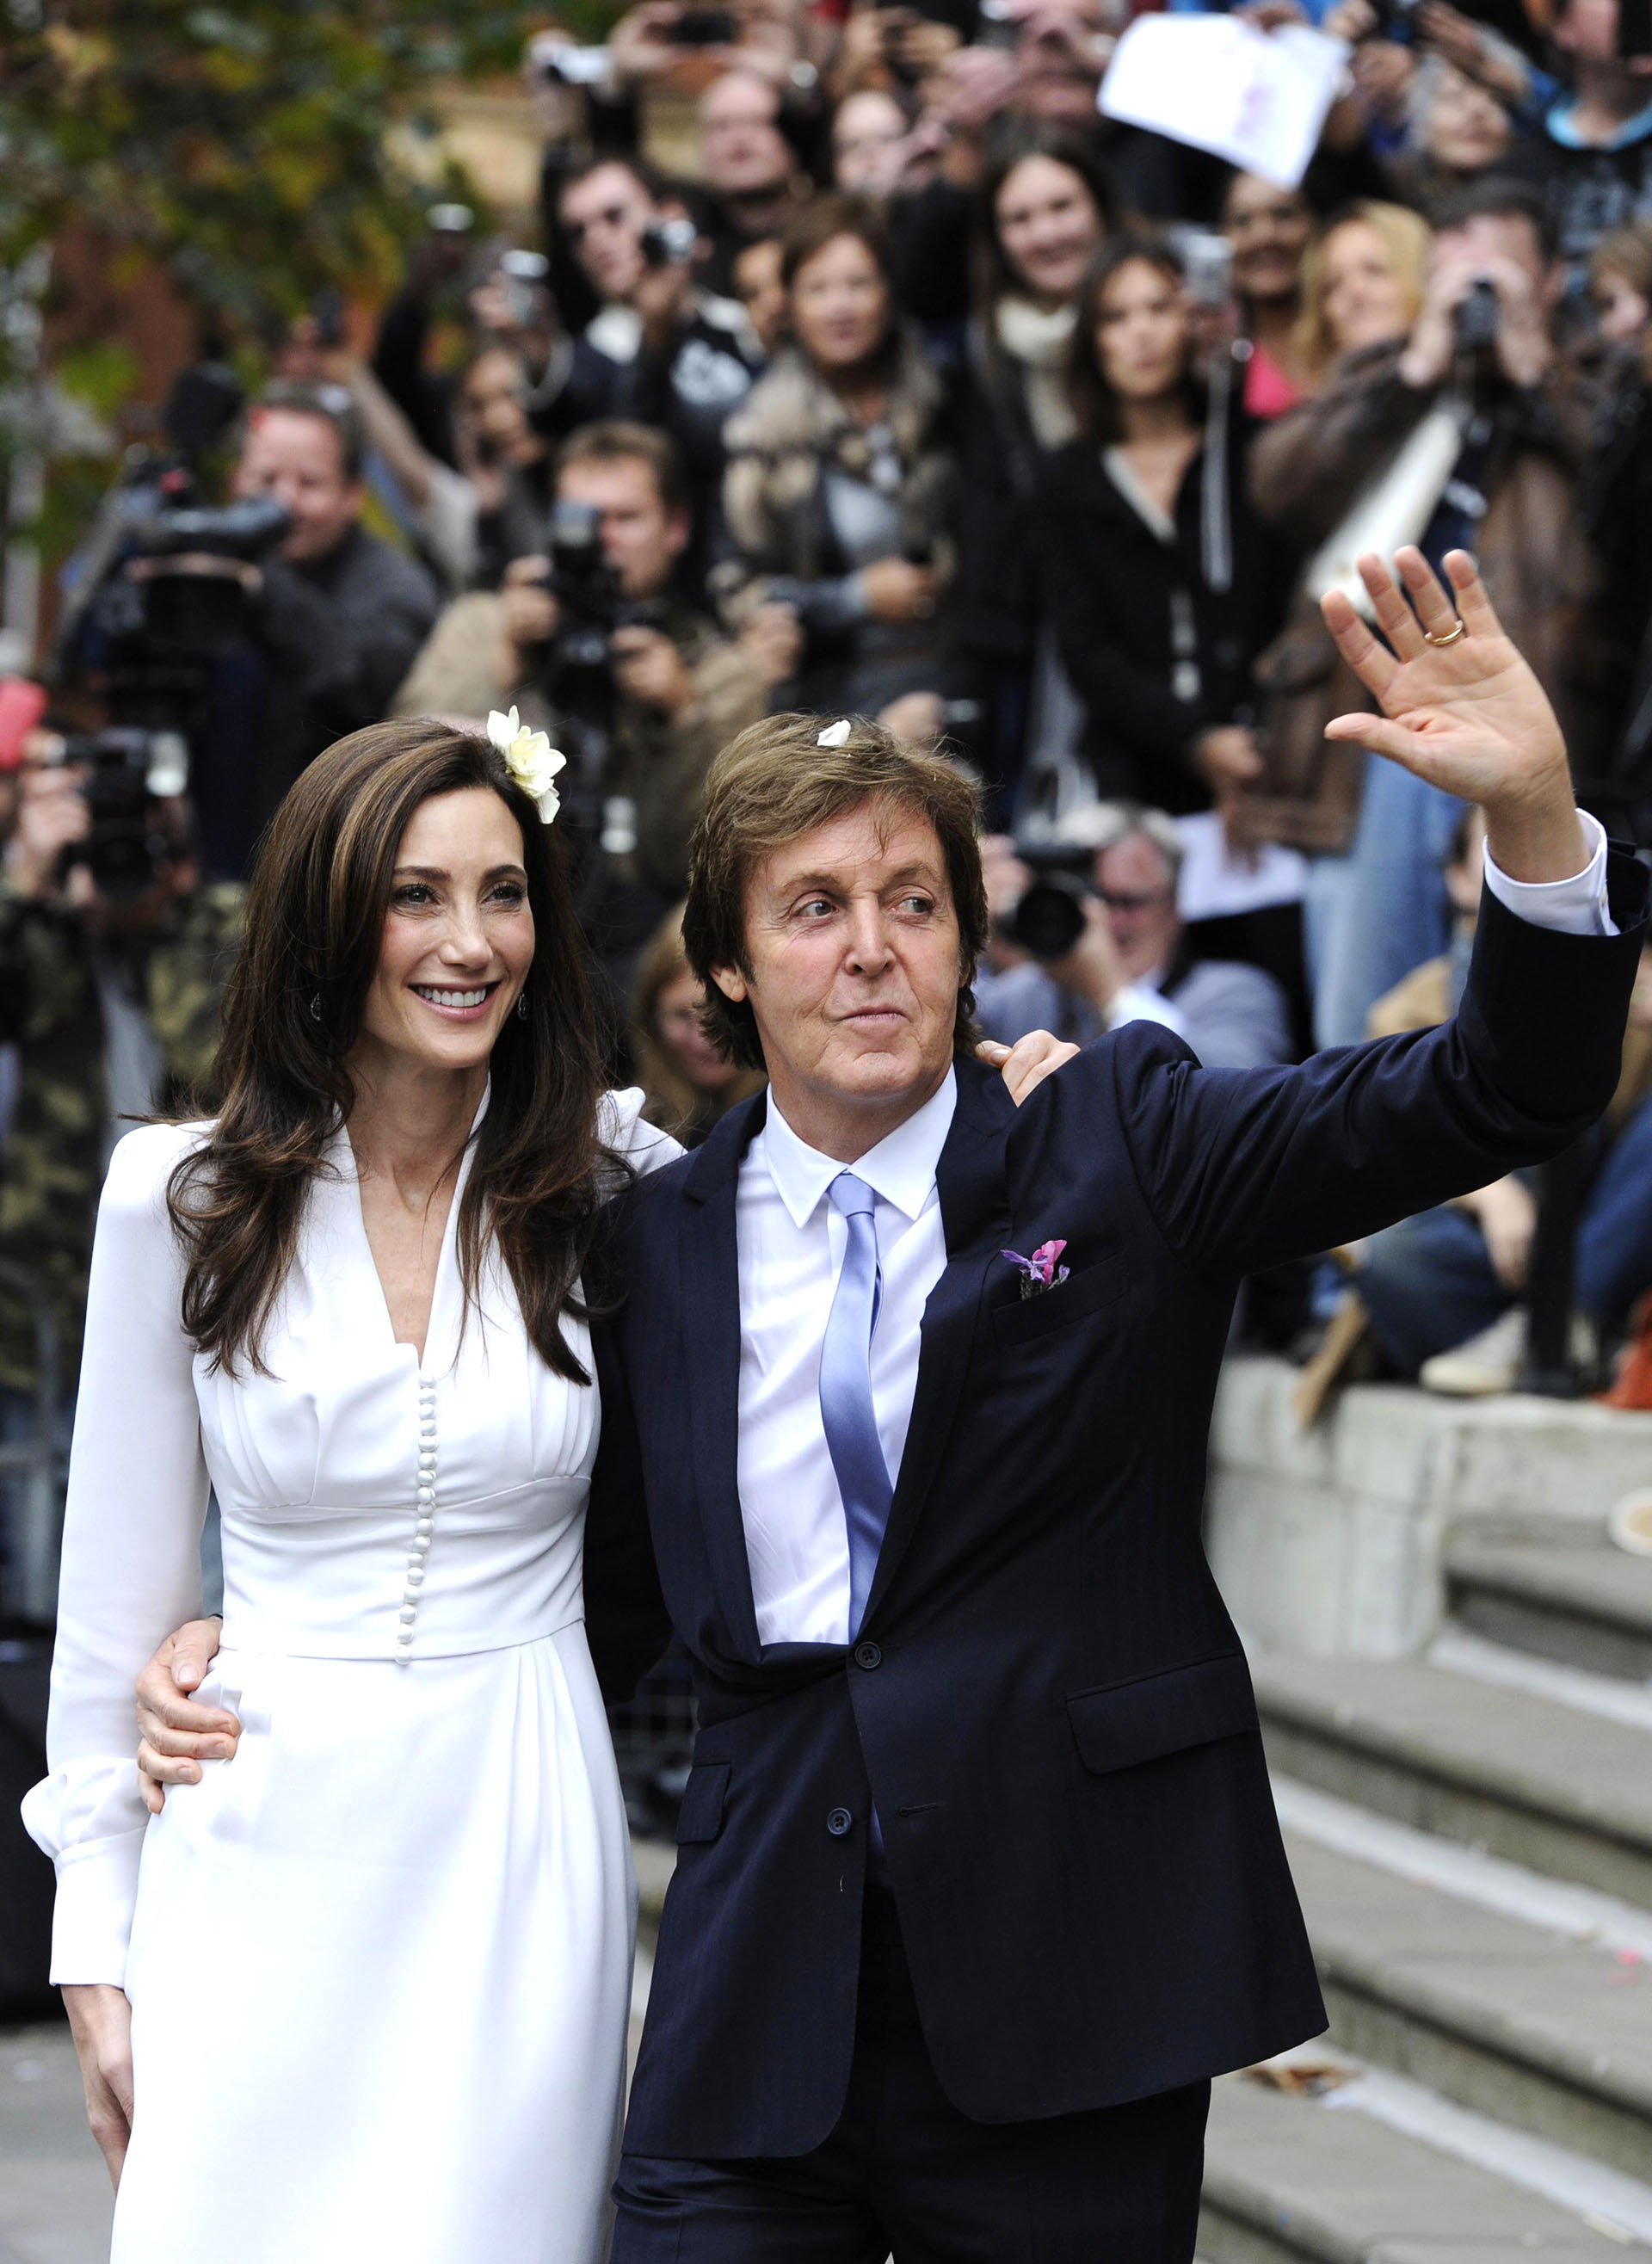 Paul McCartney y su tercera esposa Nancy Shevell salen del registro civil de Marylebone (el mismo lugar en el que se había casado con Linda) el 9 de octubre de 2011. el matrimonio perdura hasta hoy
AFP PHOTO / FACUNDO ARRIZABALAGA
zzzz